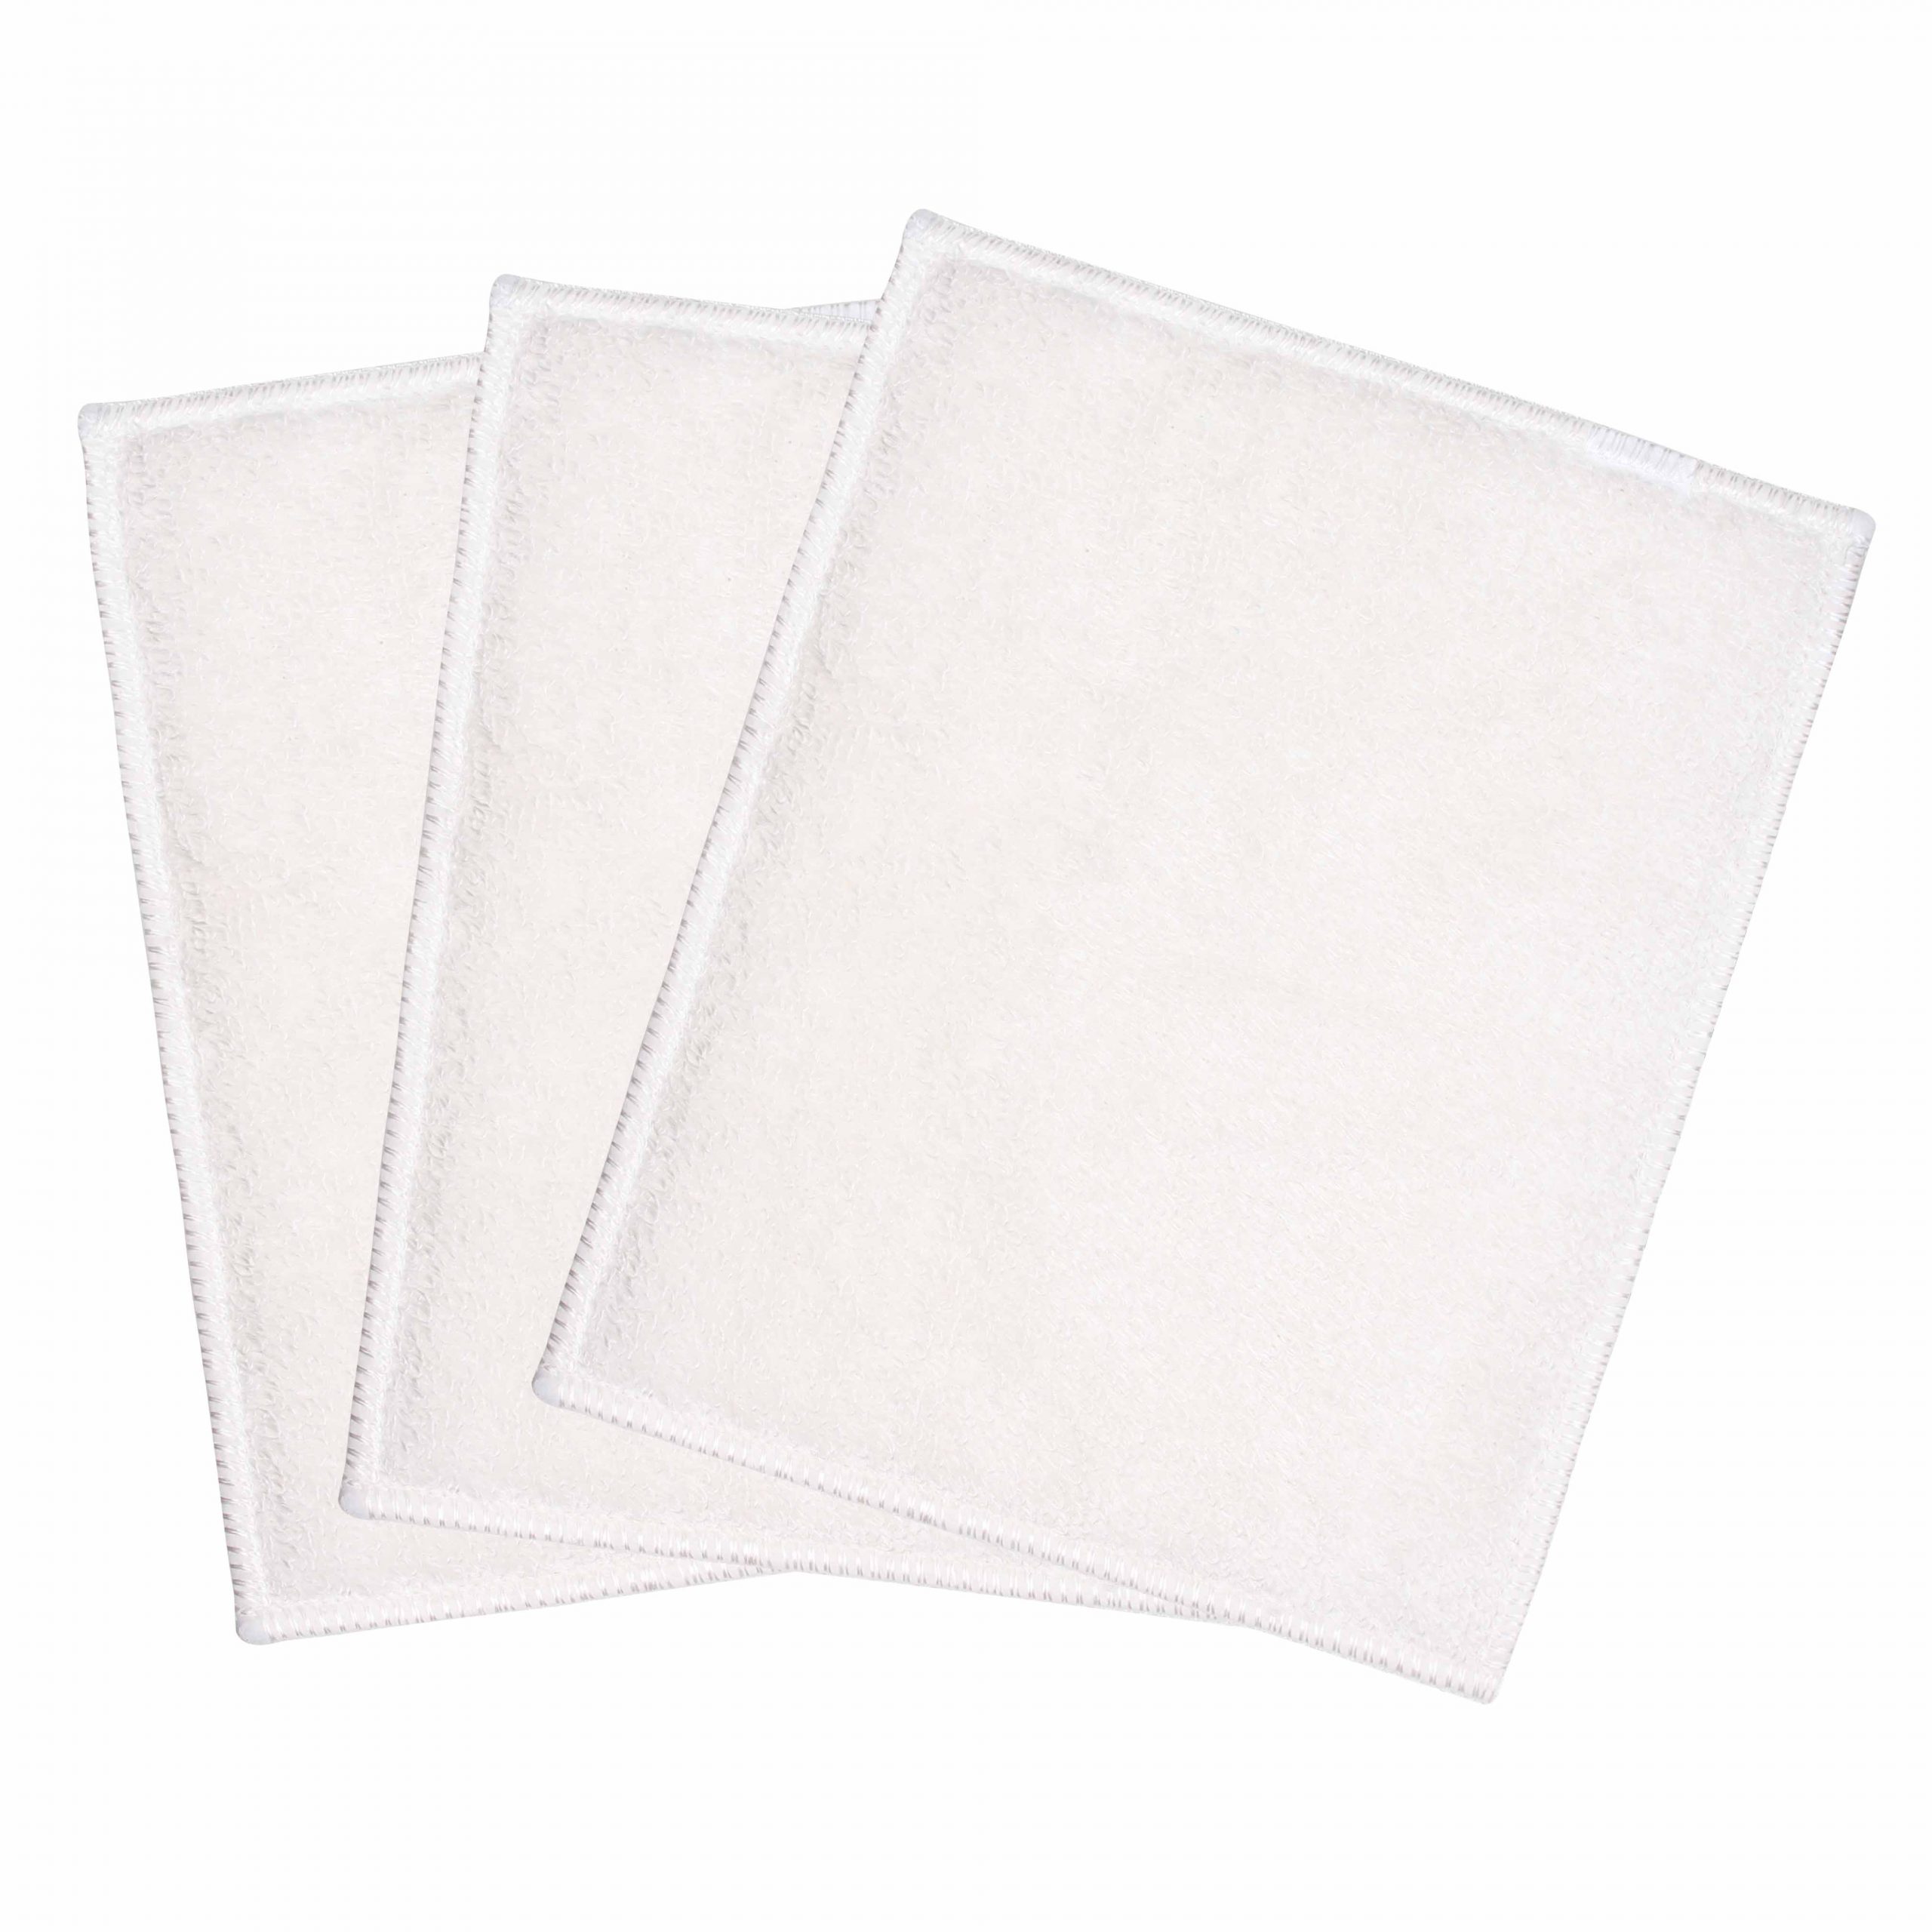 White Magic Eco Basics Bamboo Cloth 3 Pack Product Image 1